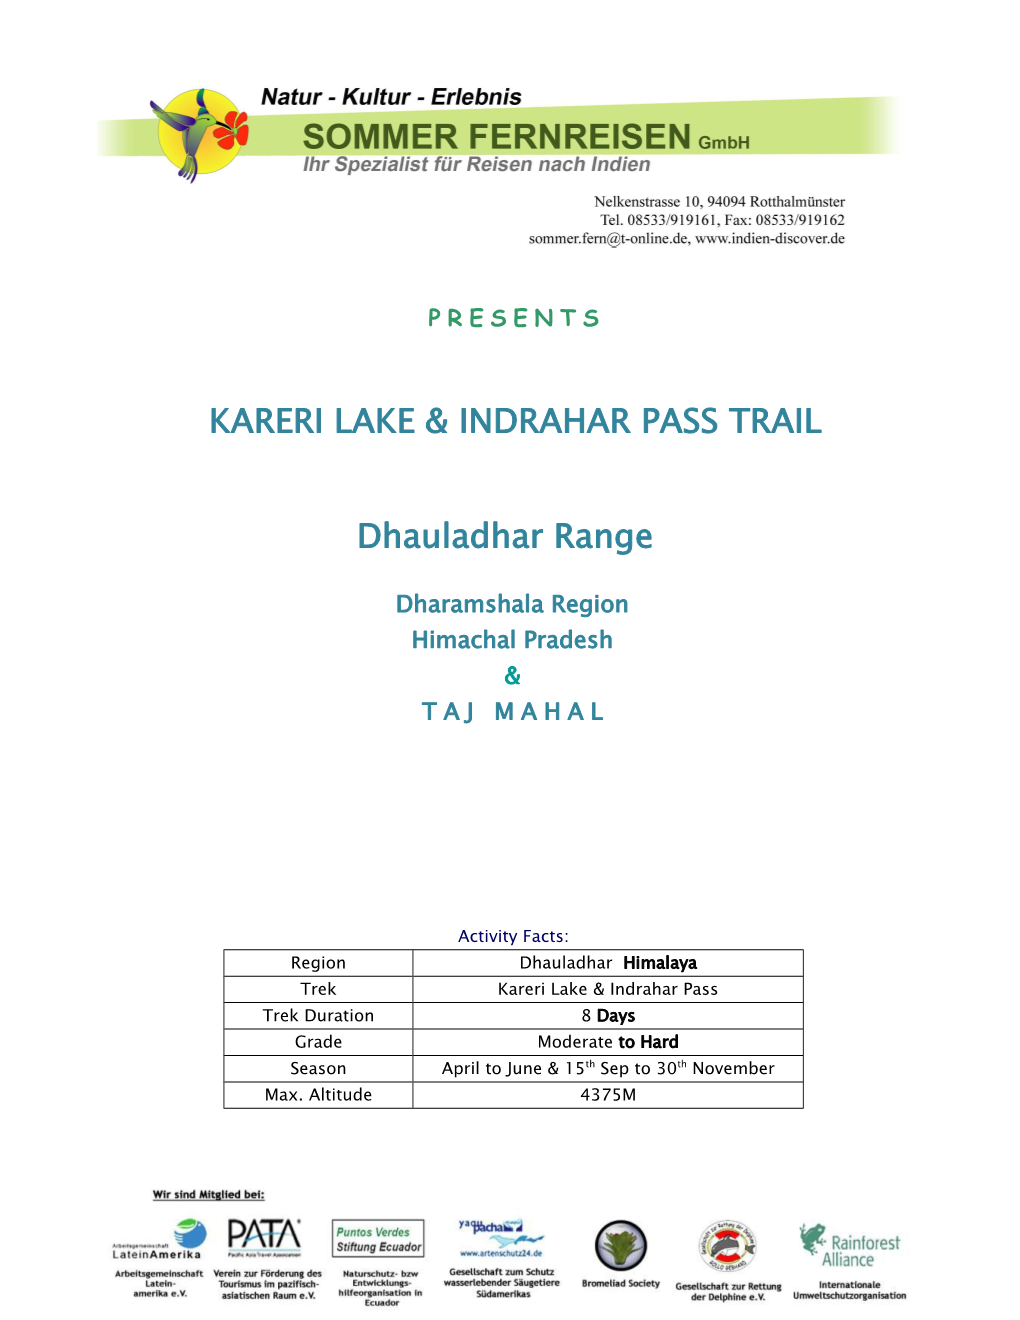 KARERI LAKE & INDRAHAR PASS TRAIL Dhauladhar Range